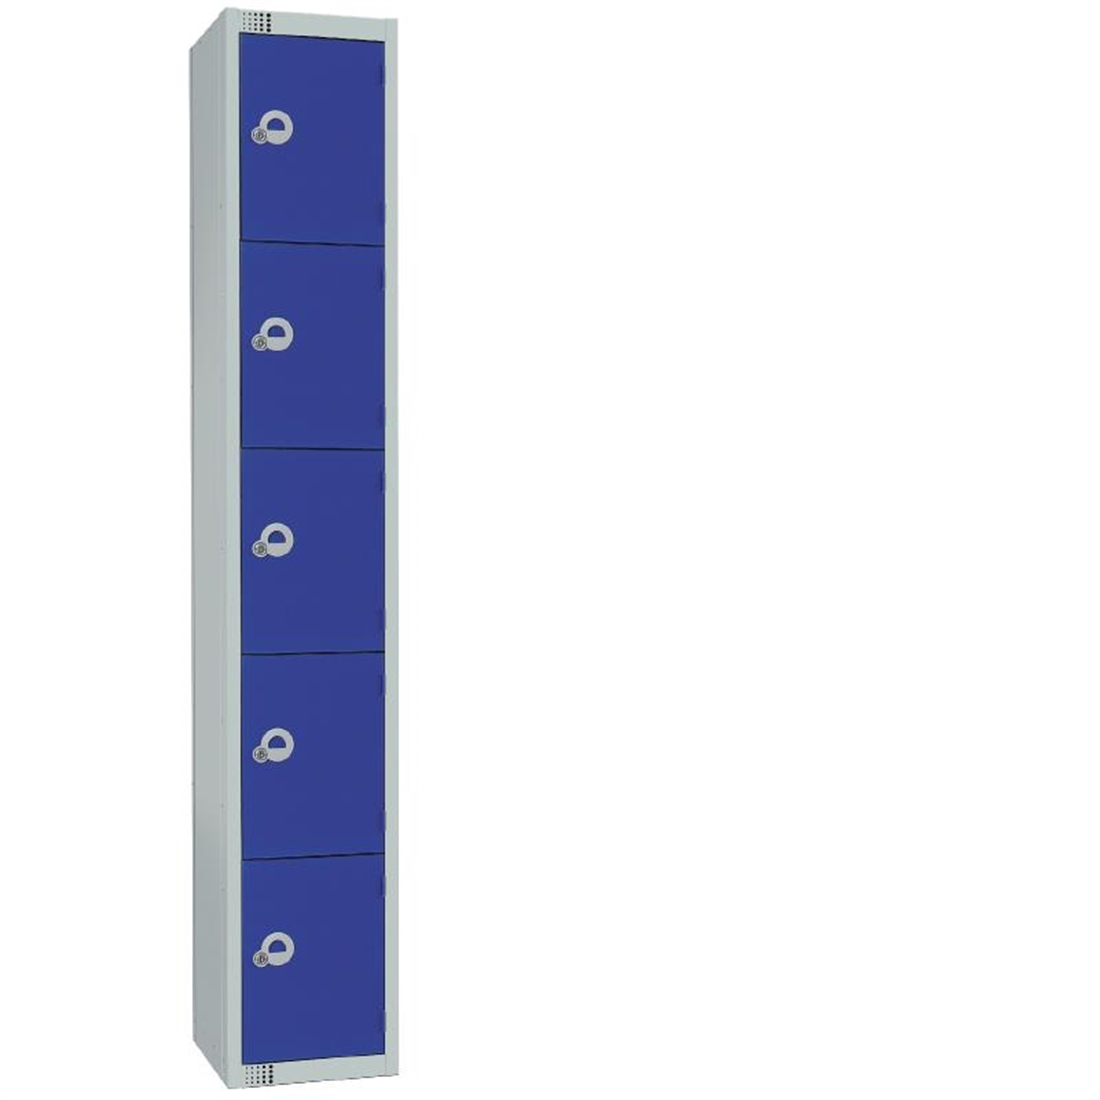 Elite Five Door Electronic Combination Locker with Sloping Top Blue